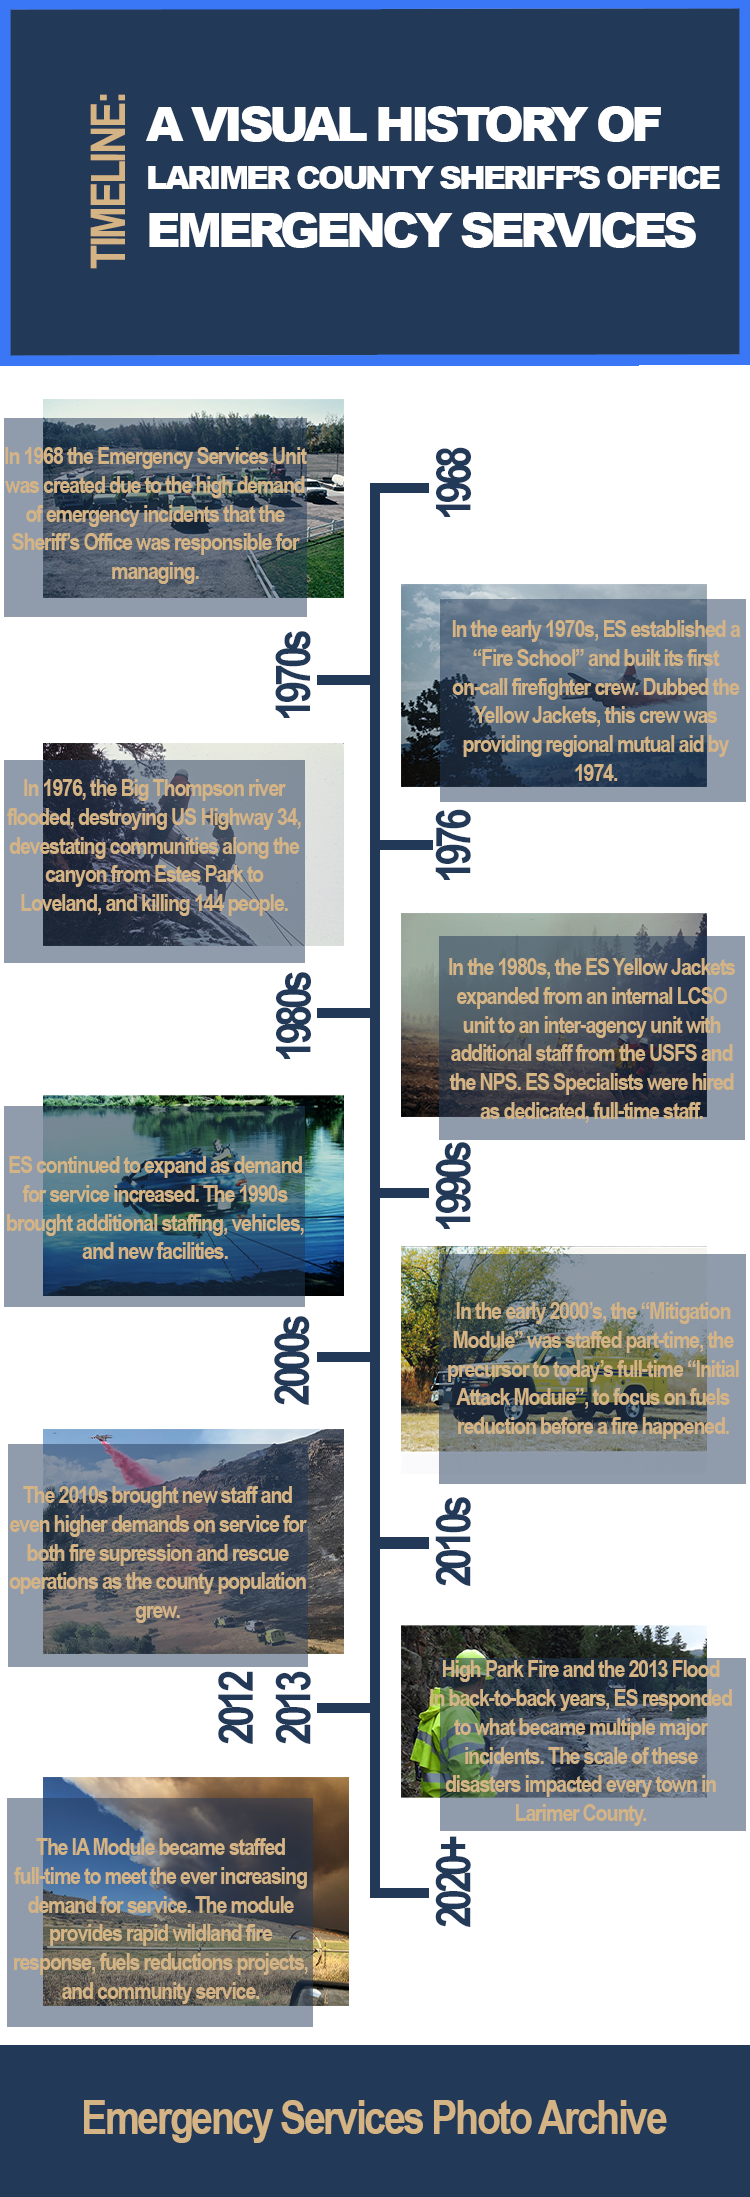 Cronología de la historia de los Servicios de Emergencia desde 1968 en adelante.